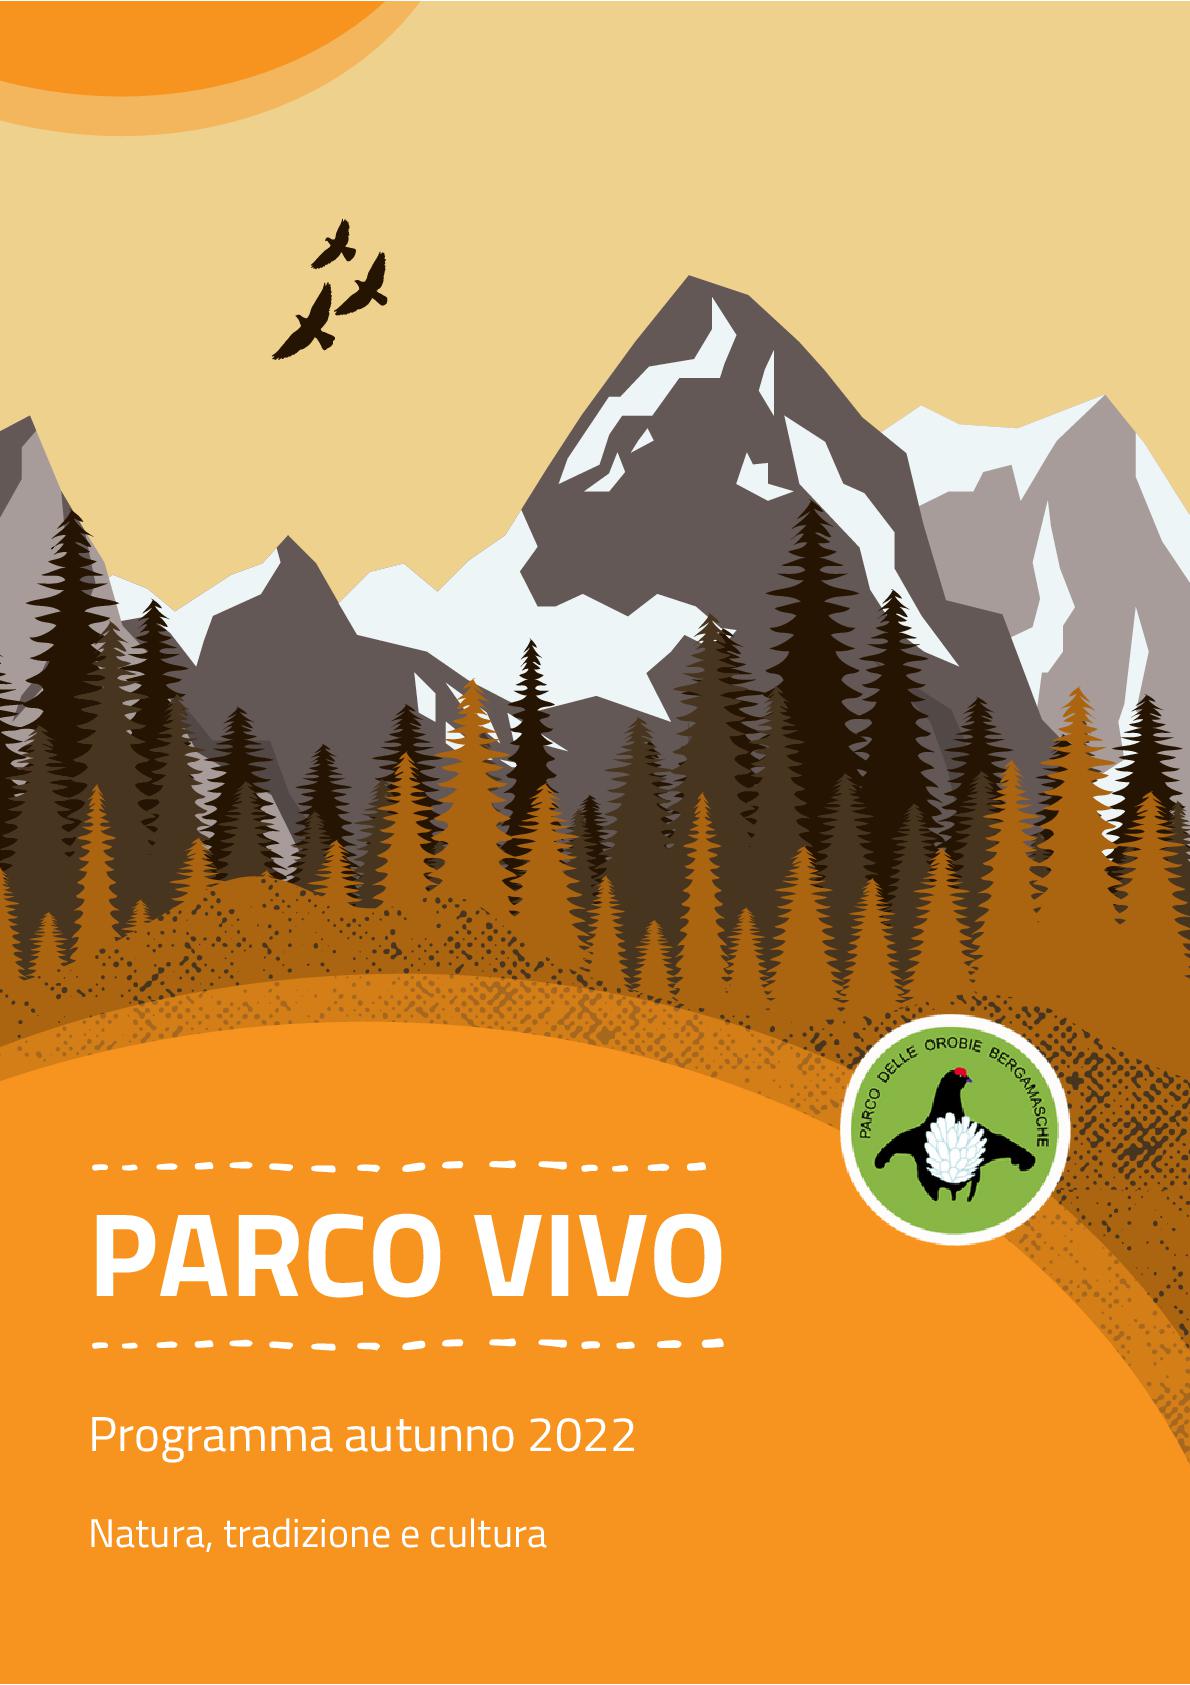 Immagine che raffigura Parco Vivo 2022